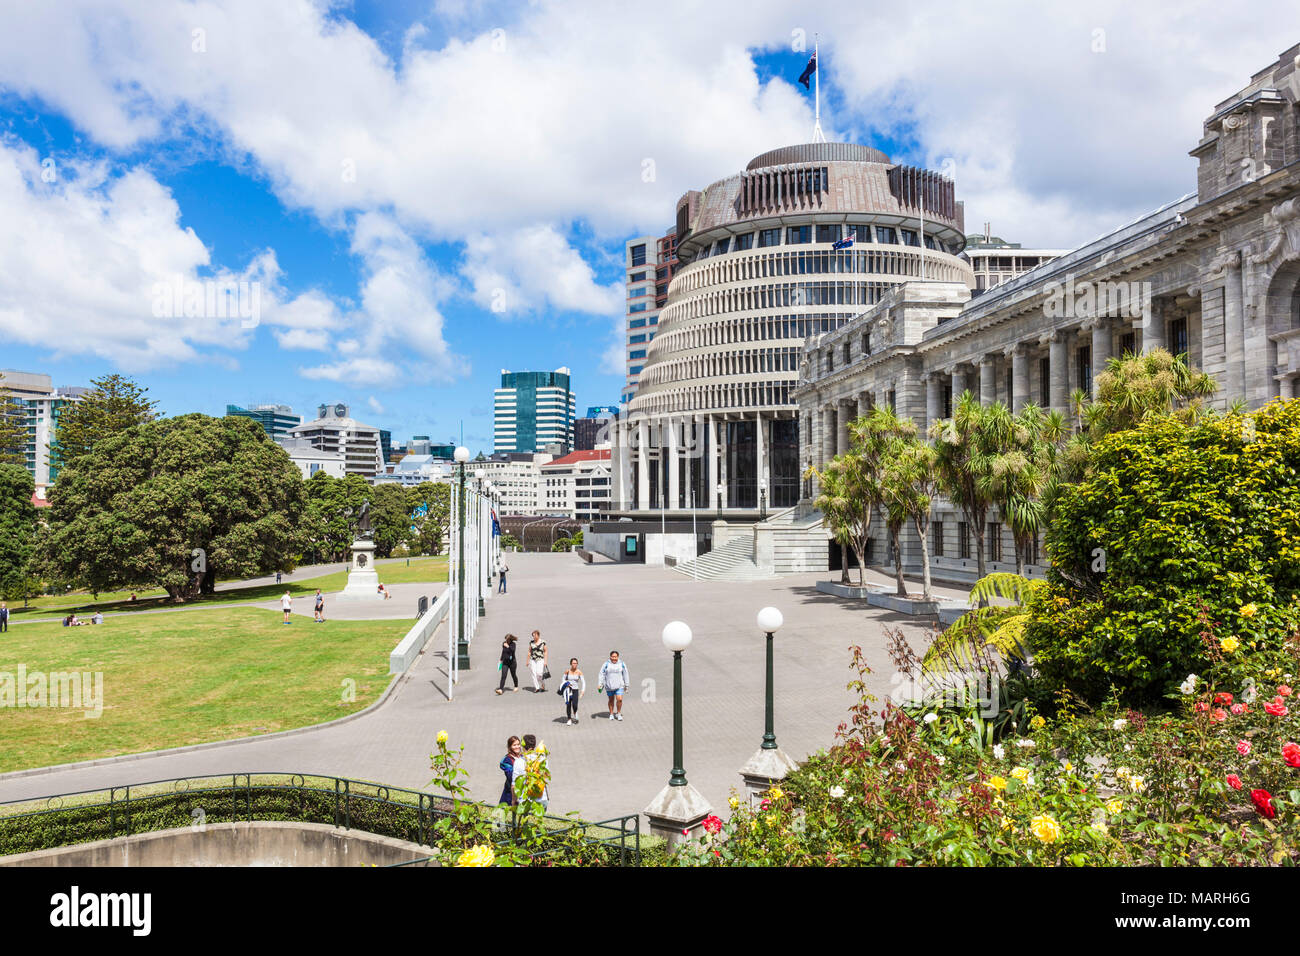 Le Parlement de Nouvelle-Zélande wellington new zealand la ruche par sir Basil Spence gouvernement de Nouvelle-Zélande l'Île du Nord Wellington bâtiments Nouvelle-Zélande NZ Banque D'Images